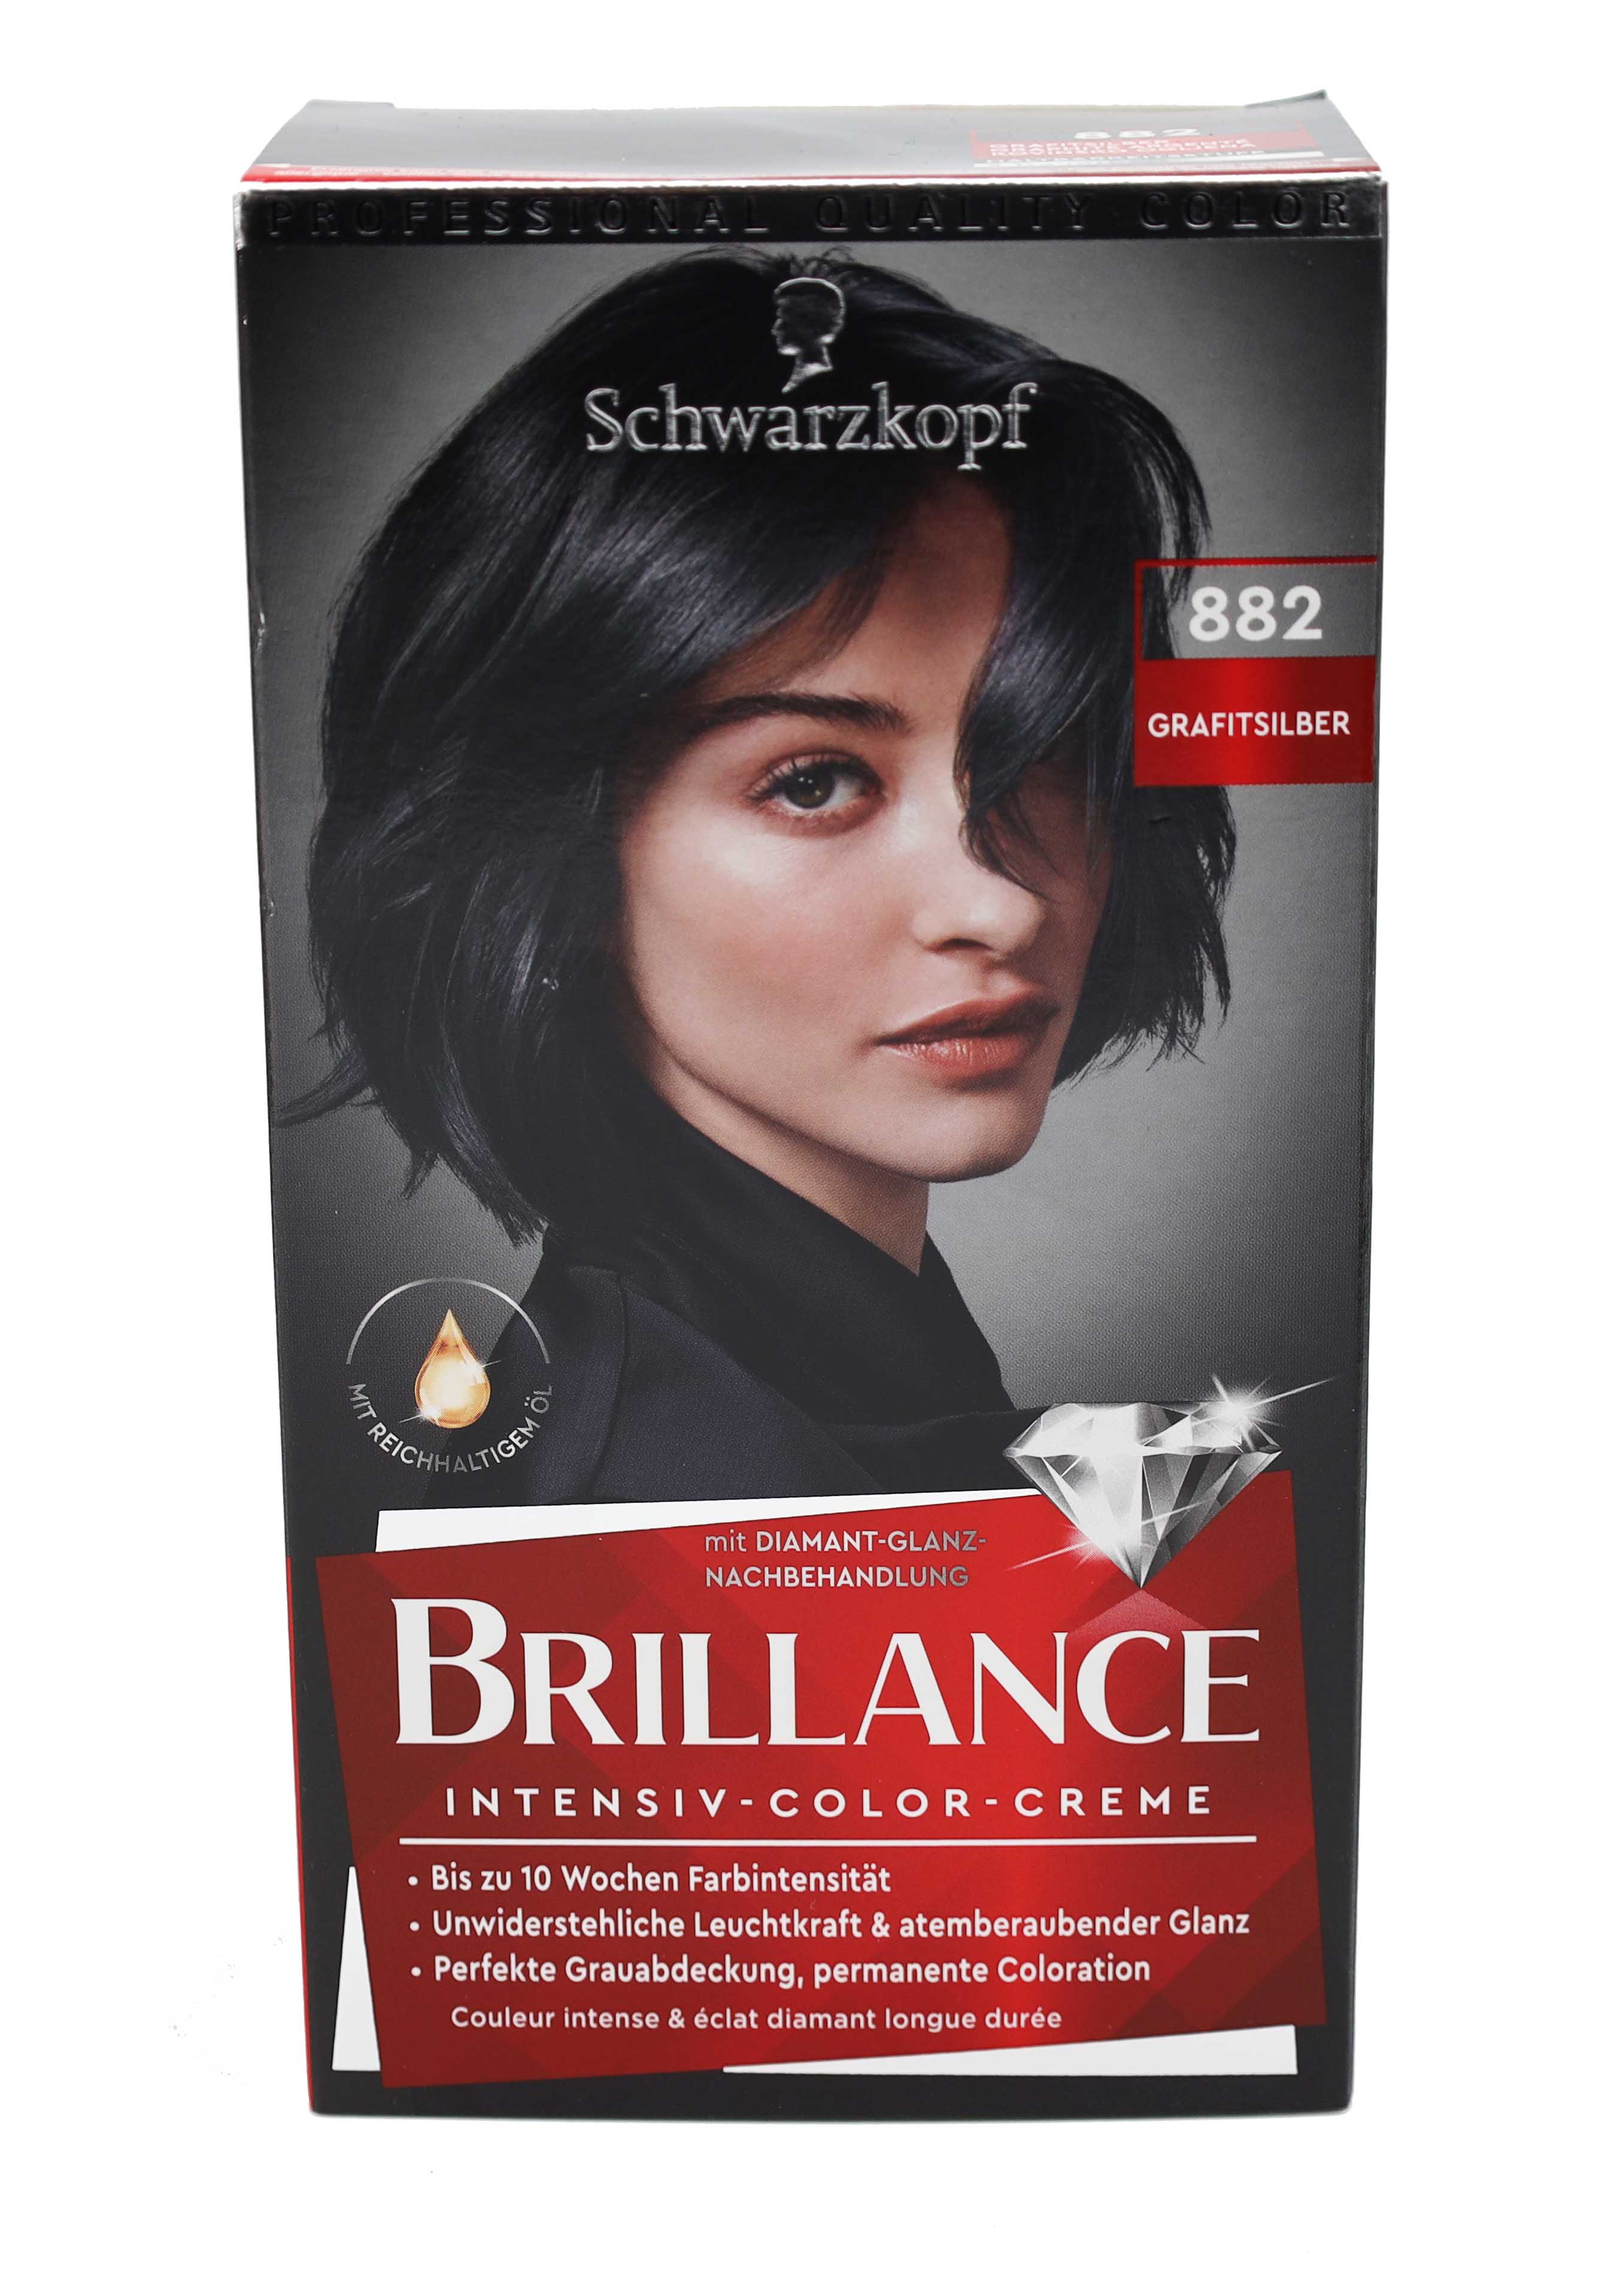 Schwarzkopf Brillance Haarfarbe 882 Grafitsilber